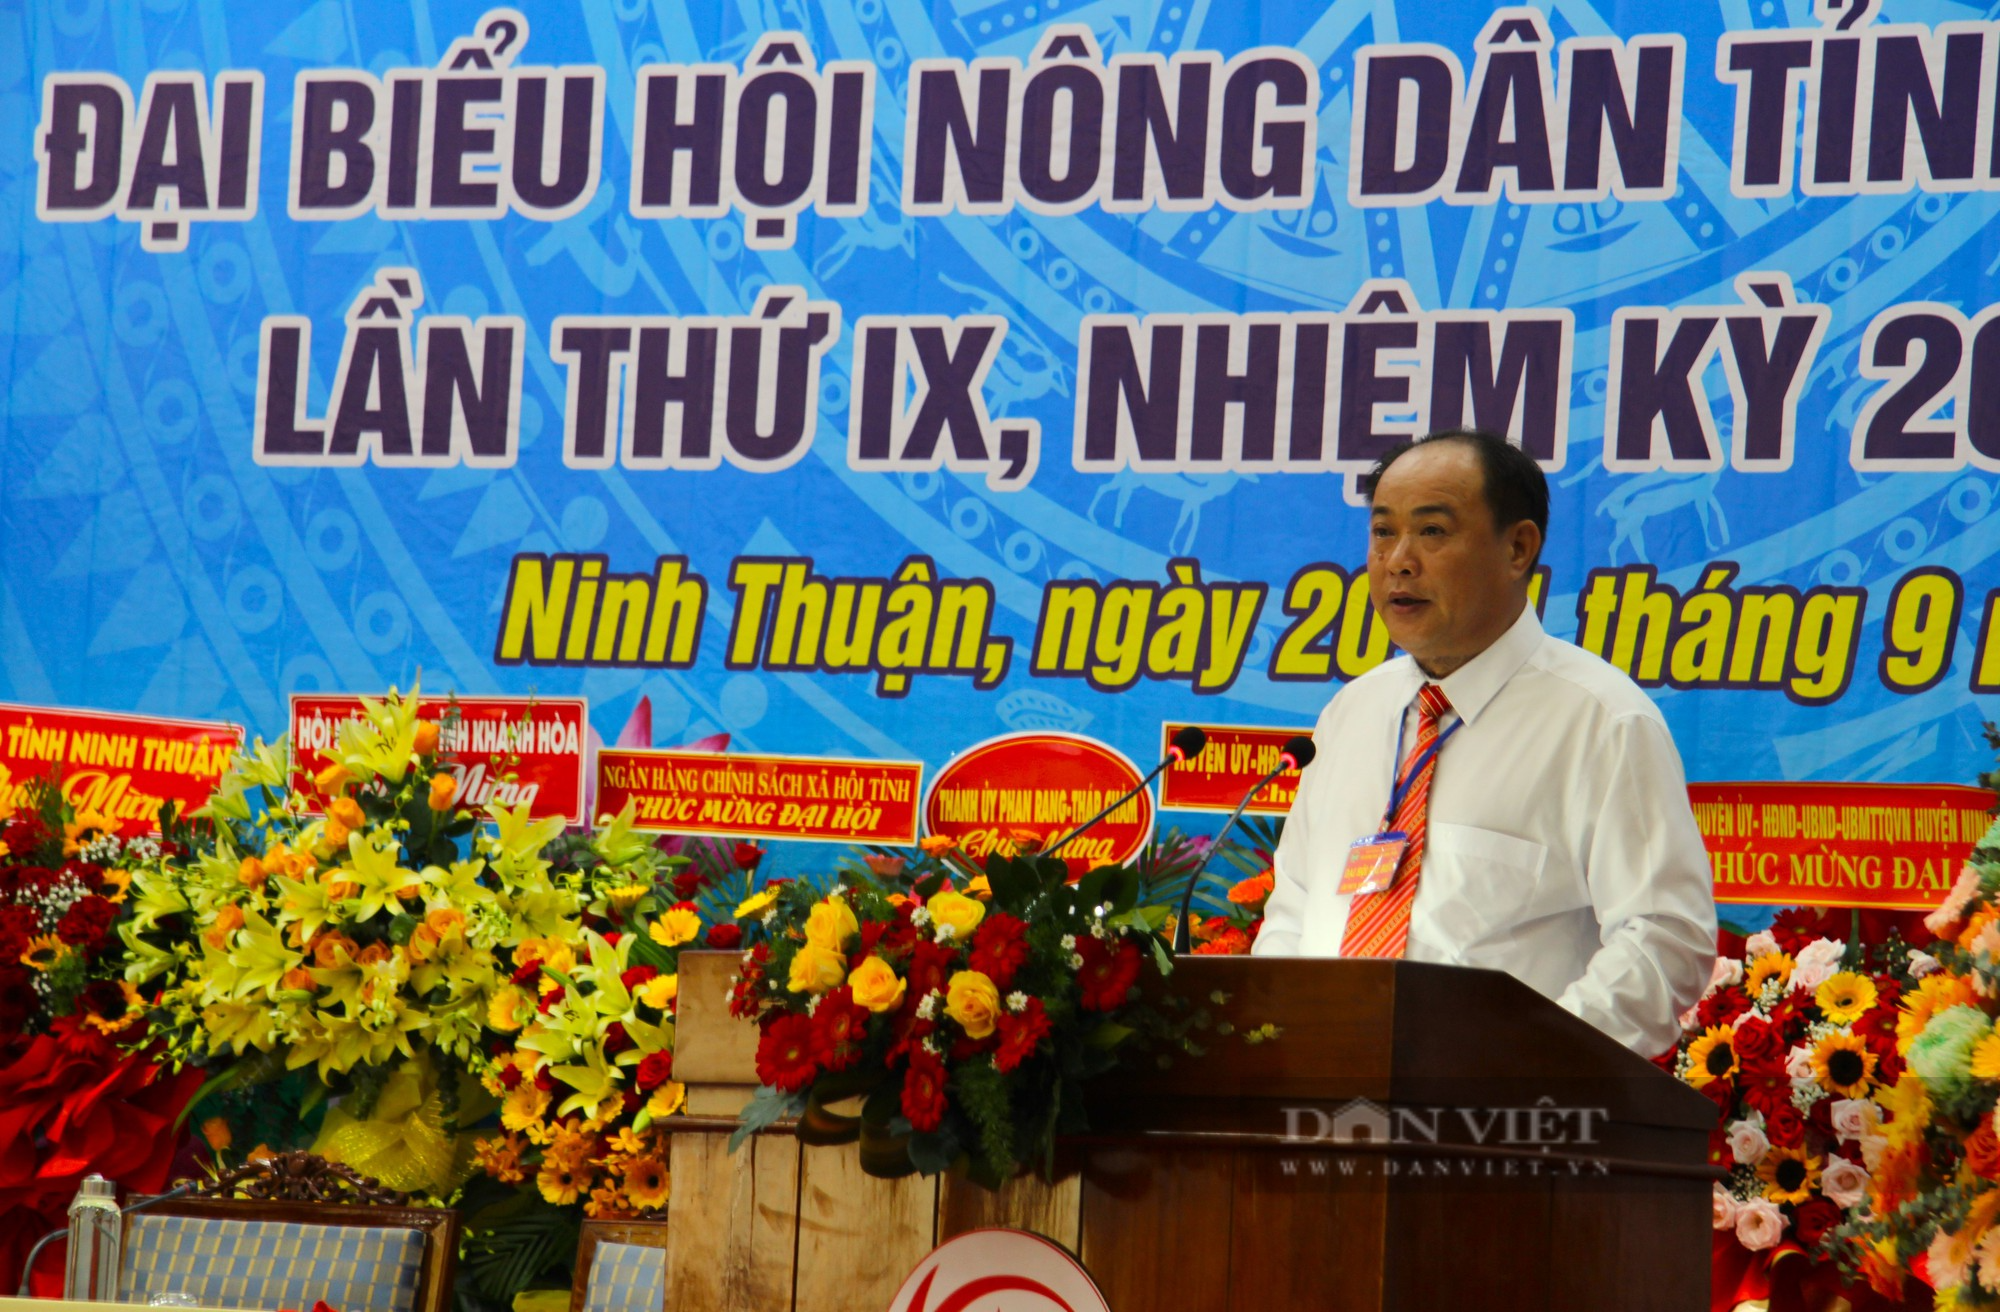 Phó chủ tịch Trung ương Hội Nguyễn Xuân Định nhấn mạnh 5 nhiệm vụ trọng tâm tại Đại hội Hội Nông dân tỉnh Ninh Thuận - Ảnh 10.